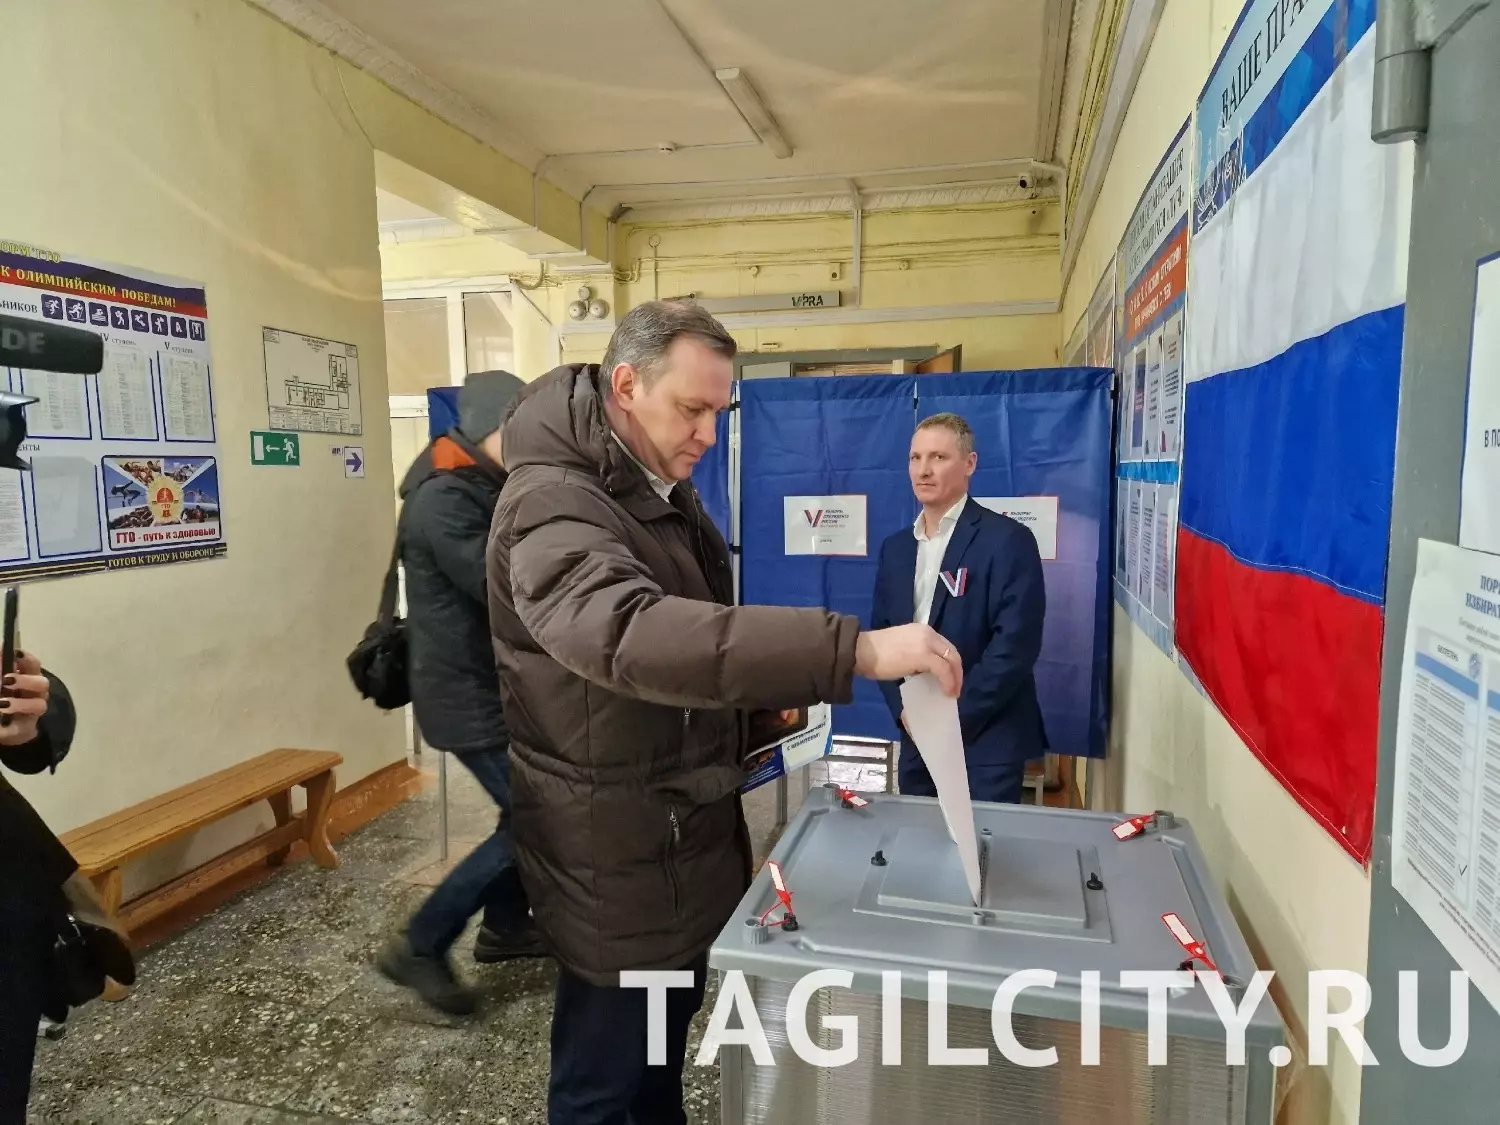 Глава города Нижний Тагил с супругой Еленой на выборах президента России.